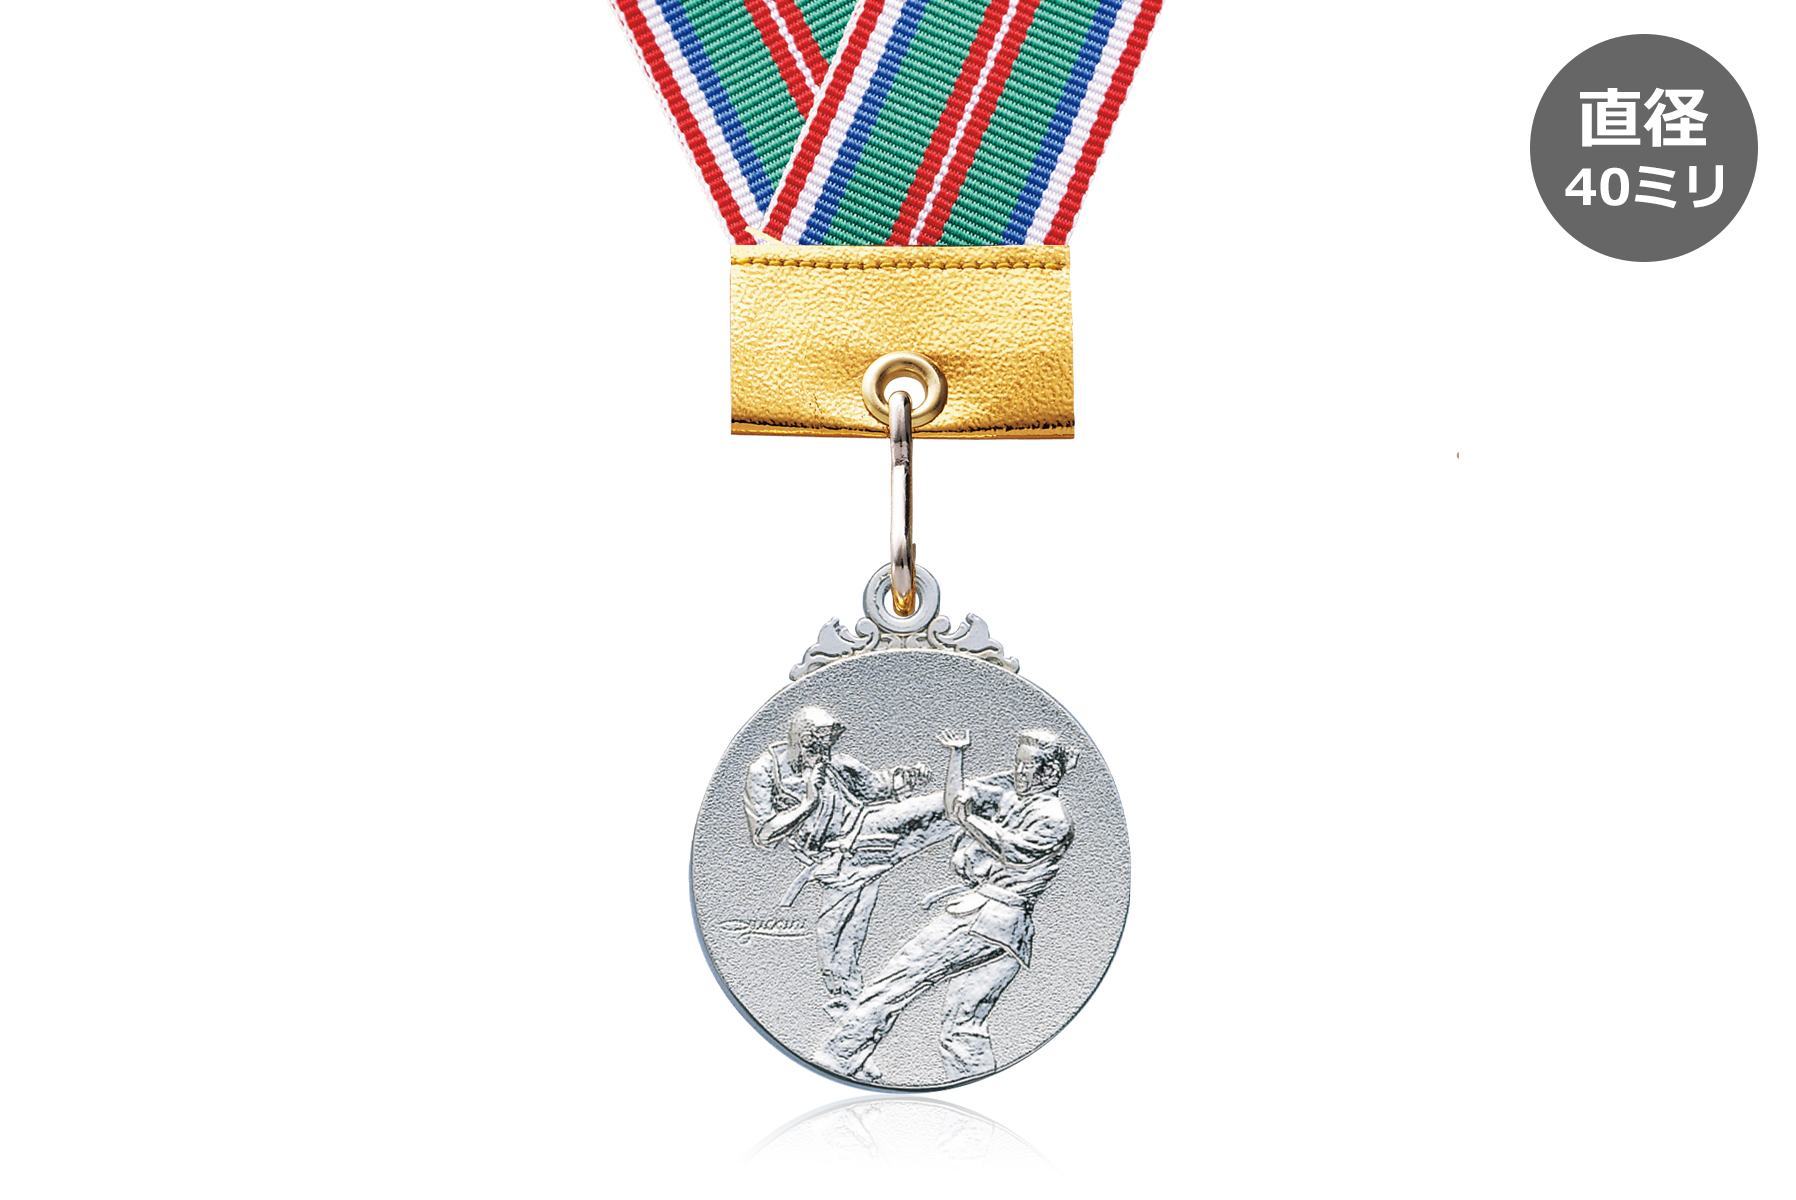 小学生空手大会に人気の表彰金メダル JW-40Z-karate